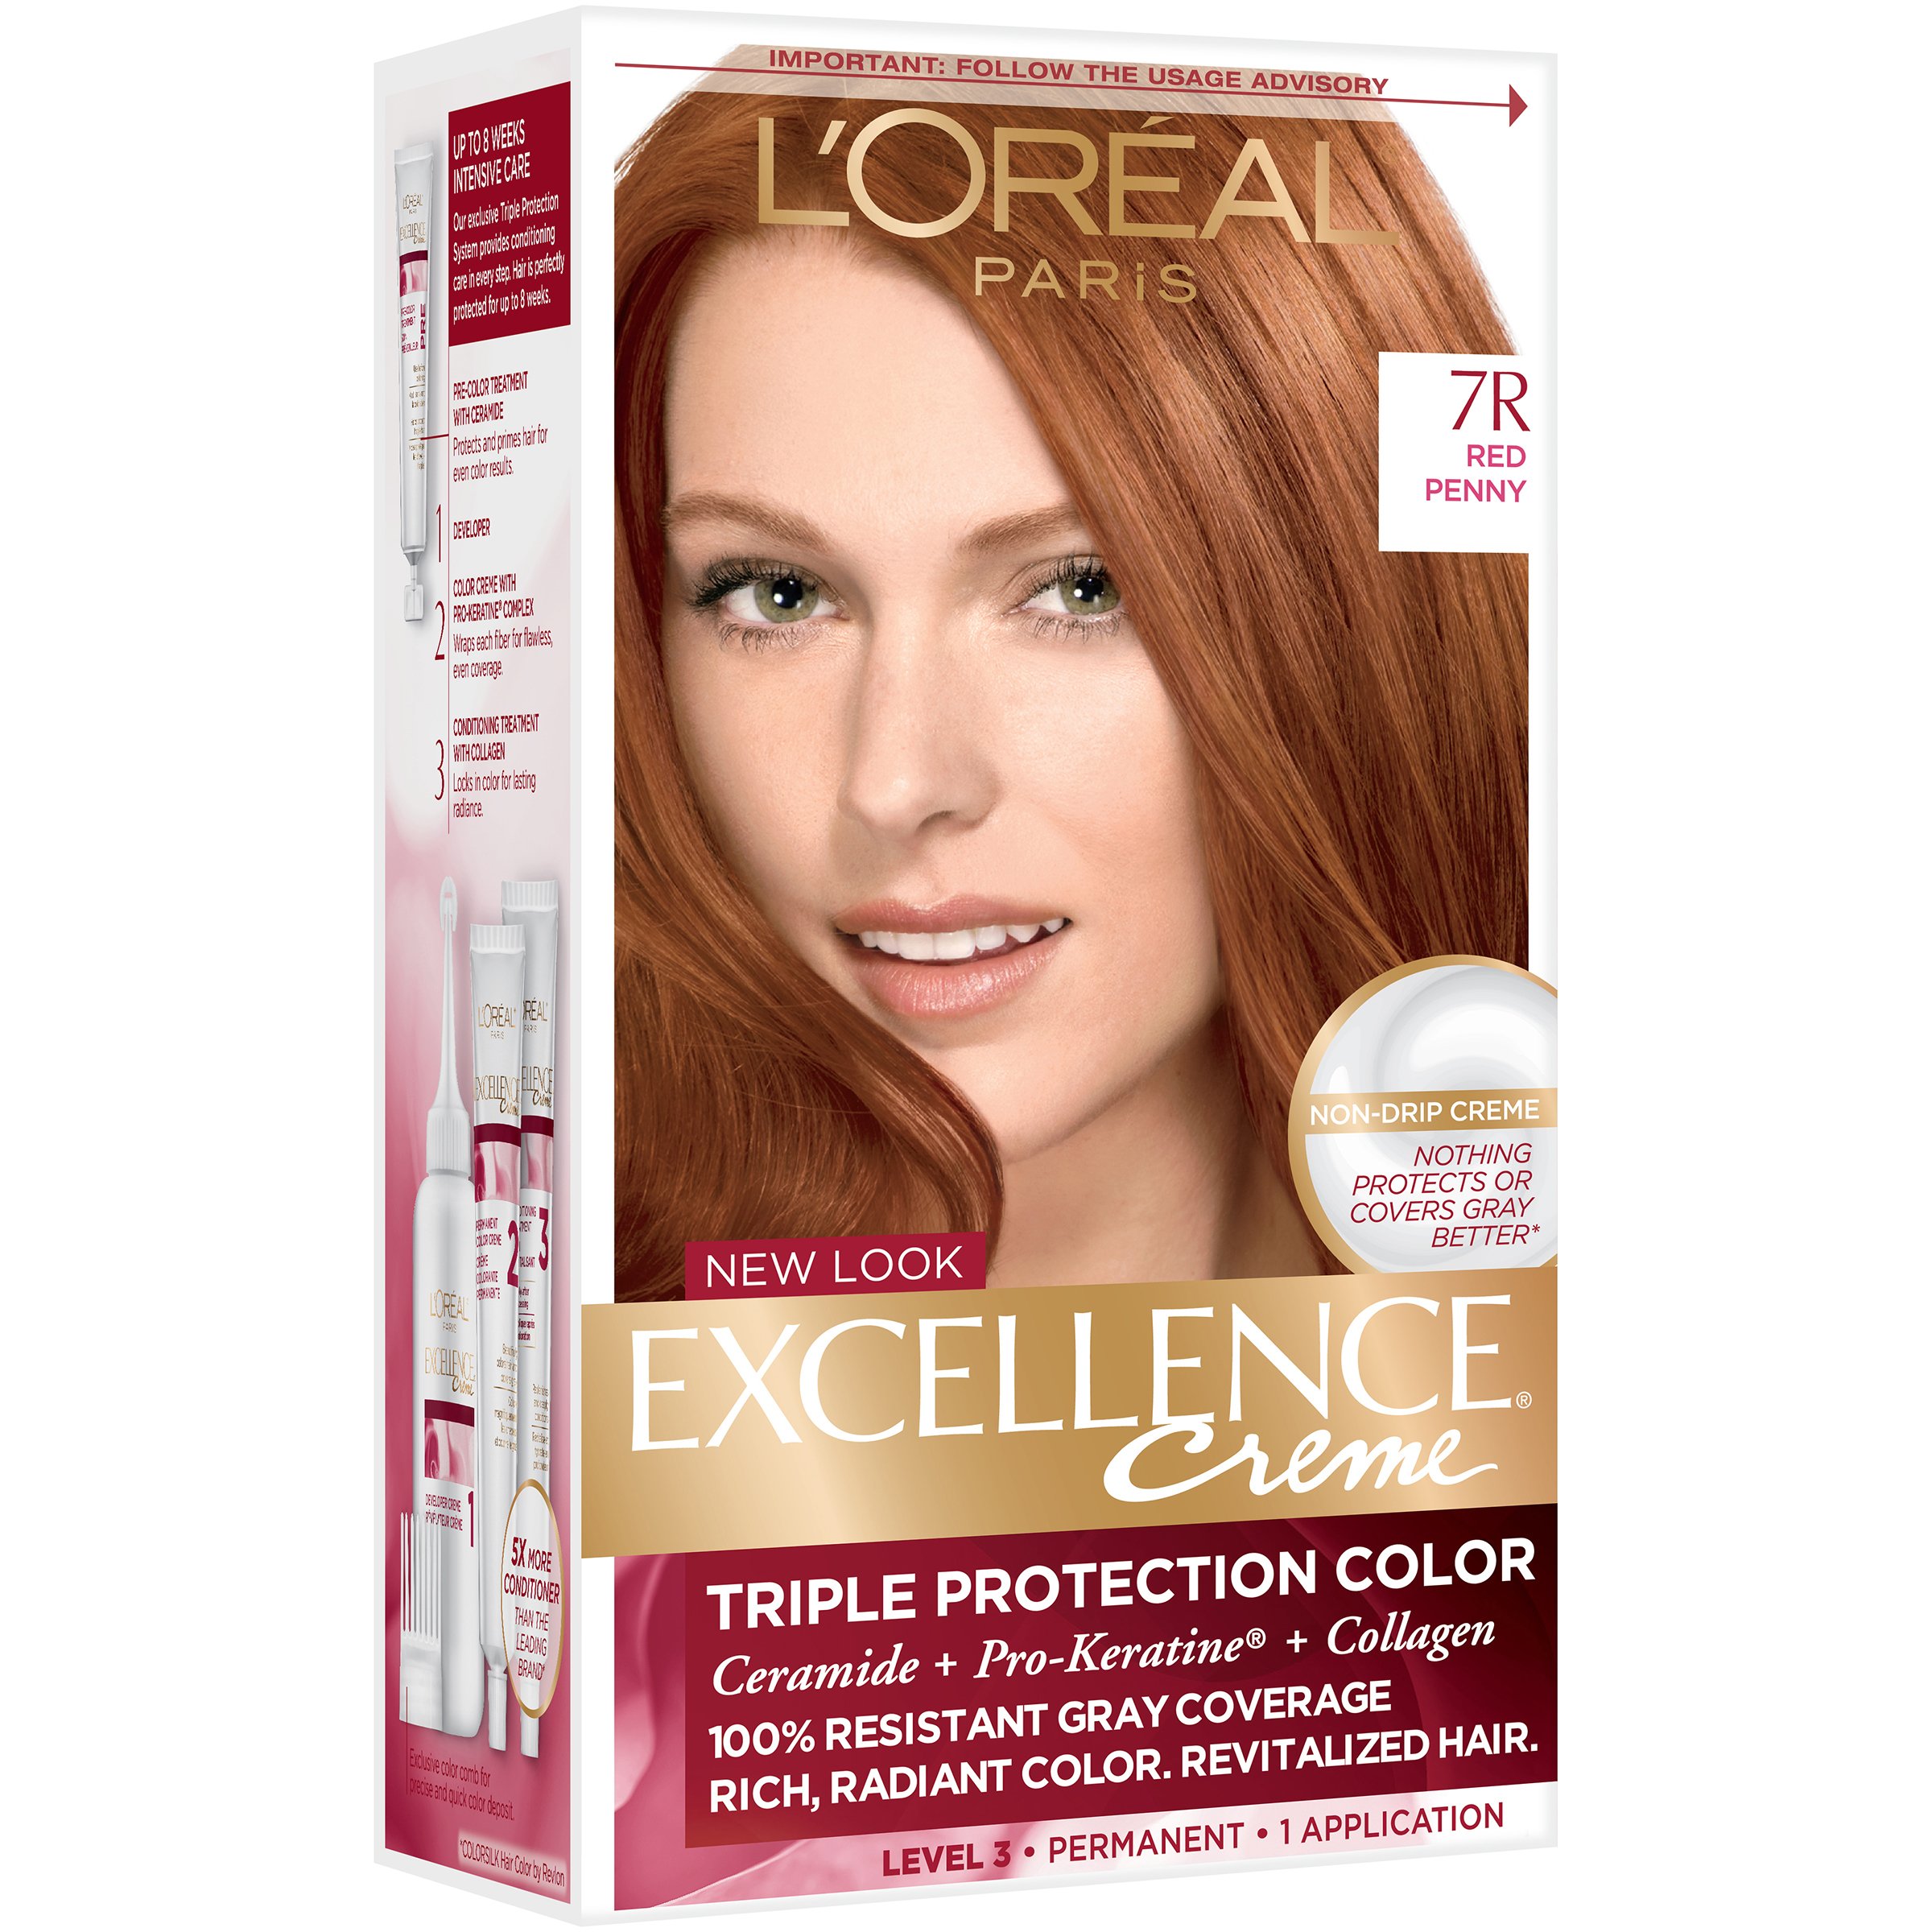 L'Oreal Paris Excellence Créme Permanent Hair Color, 7R Red Penny